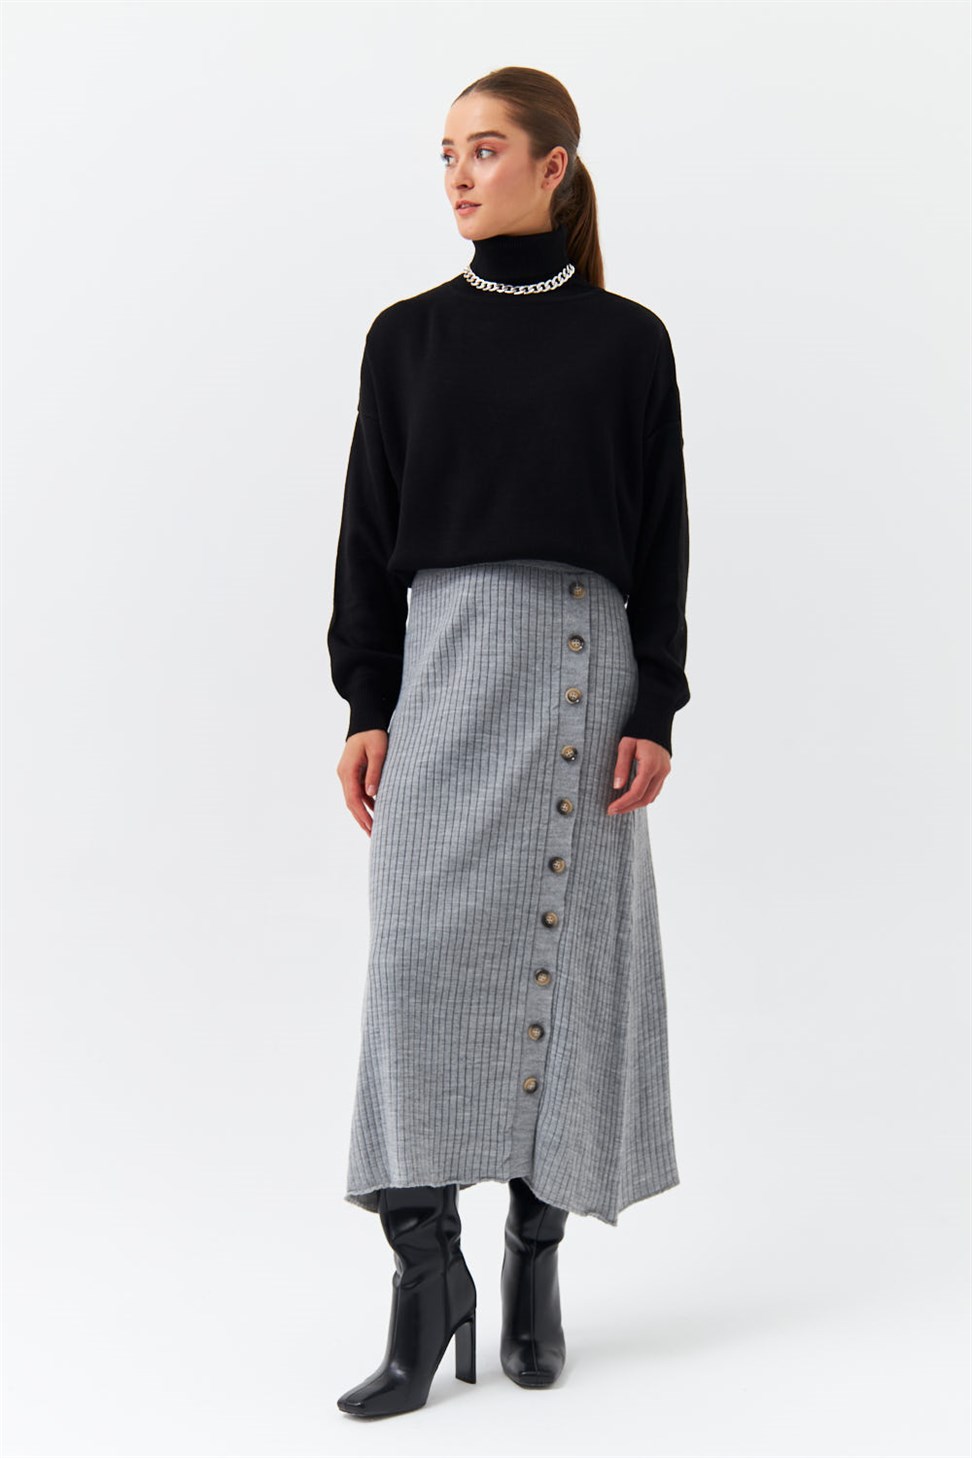 Modest Long Button Detailed Gray Knitwear Skirt